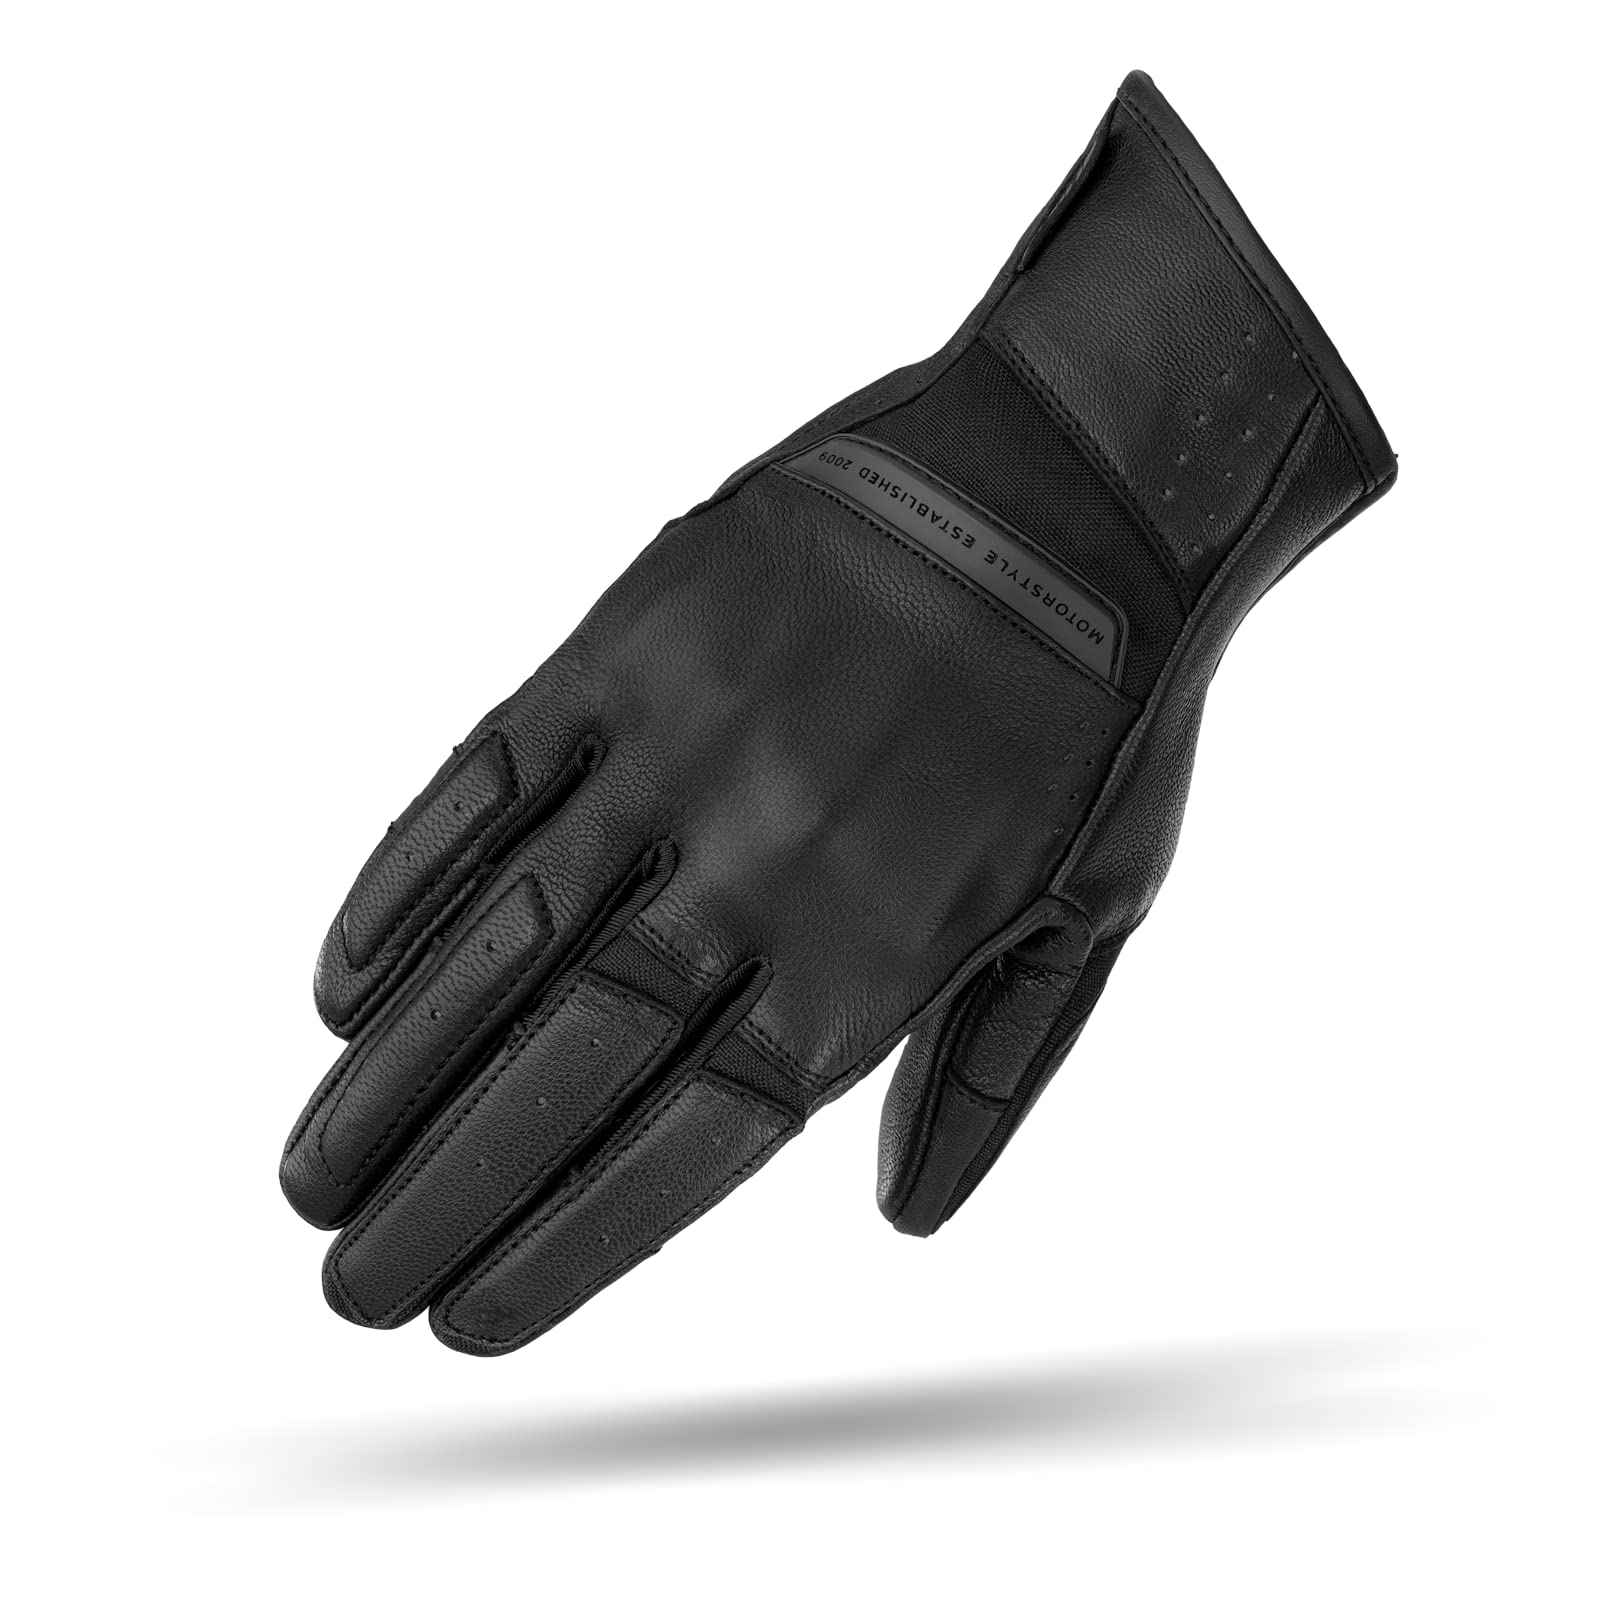 SHIMA Monaco Motorradhandschuhe Damen - Atmungsaktive, Elastische, Touchscreen, Vintage Handschuhe aus Leder mit Knöchelprotektor, Knöchel Aufpralldämpfer, Verstärkte Handfläche (Schwarz, XL) von SHIMA